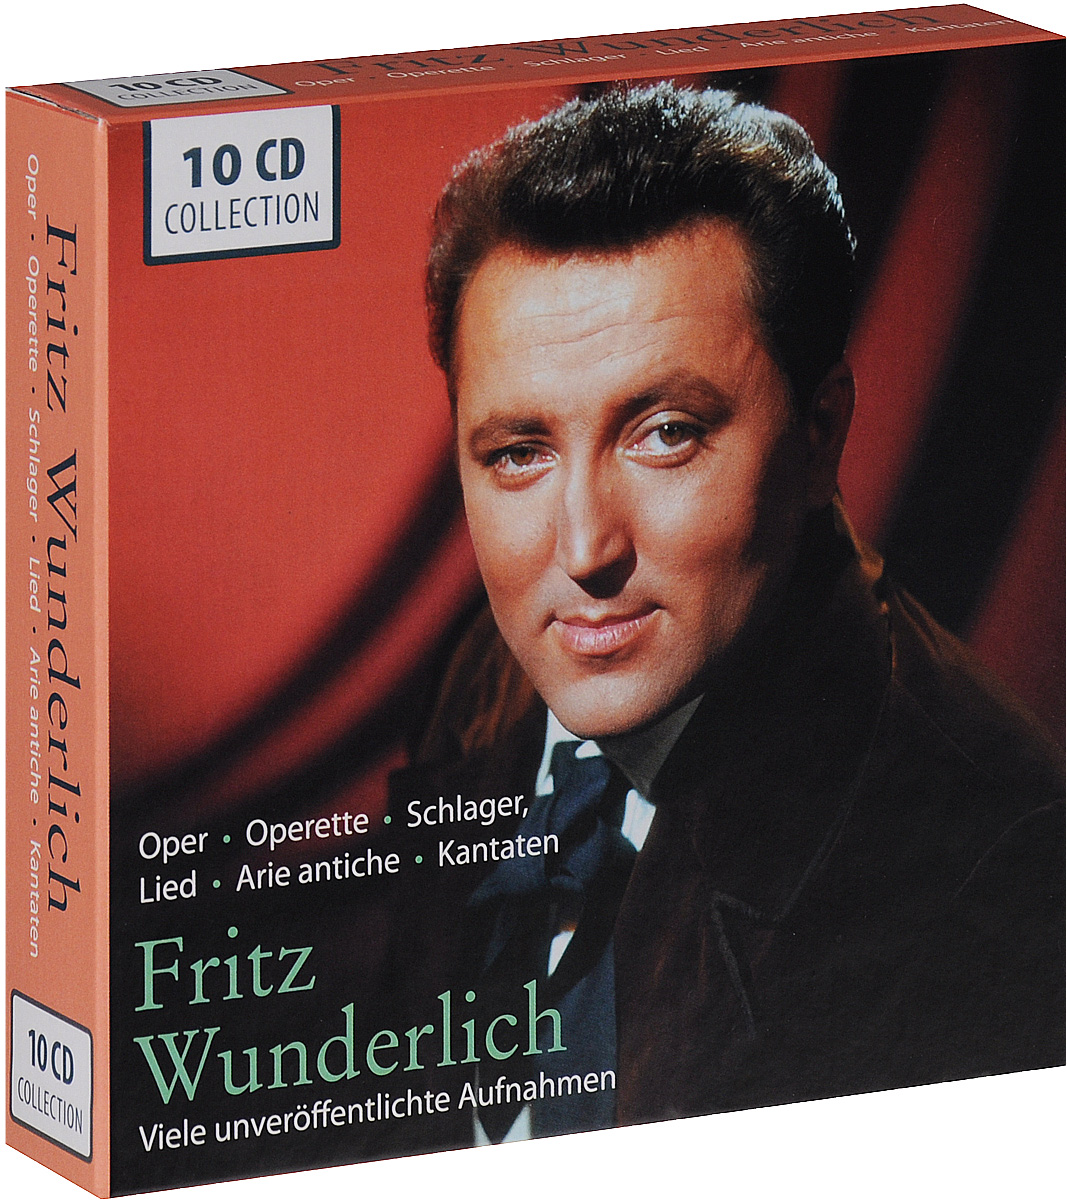 Fritz Wunderlich. Viele unveroffentliche Aufnahmen (10 CD)